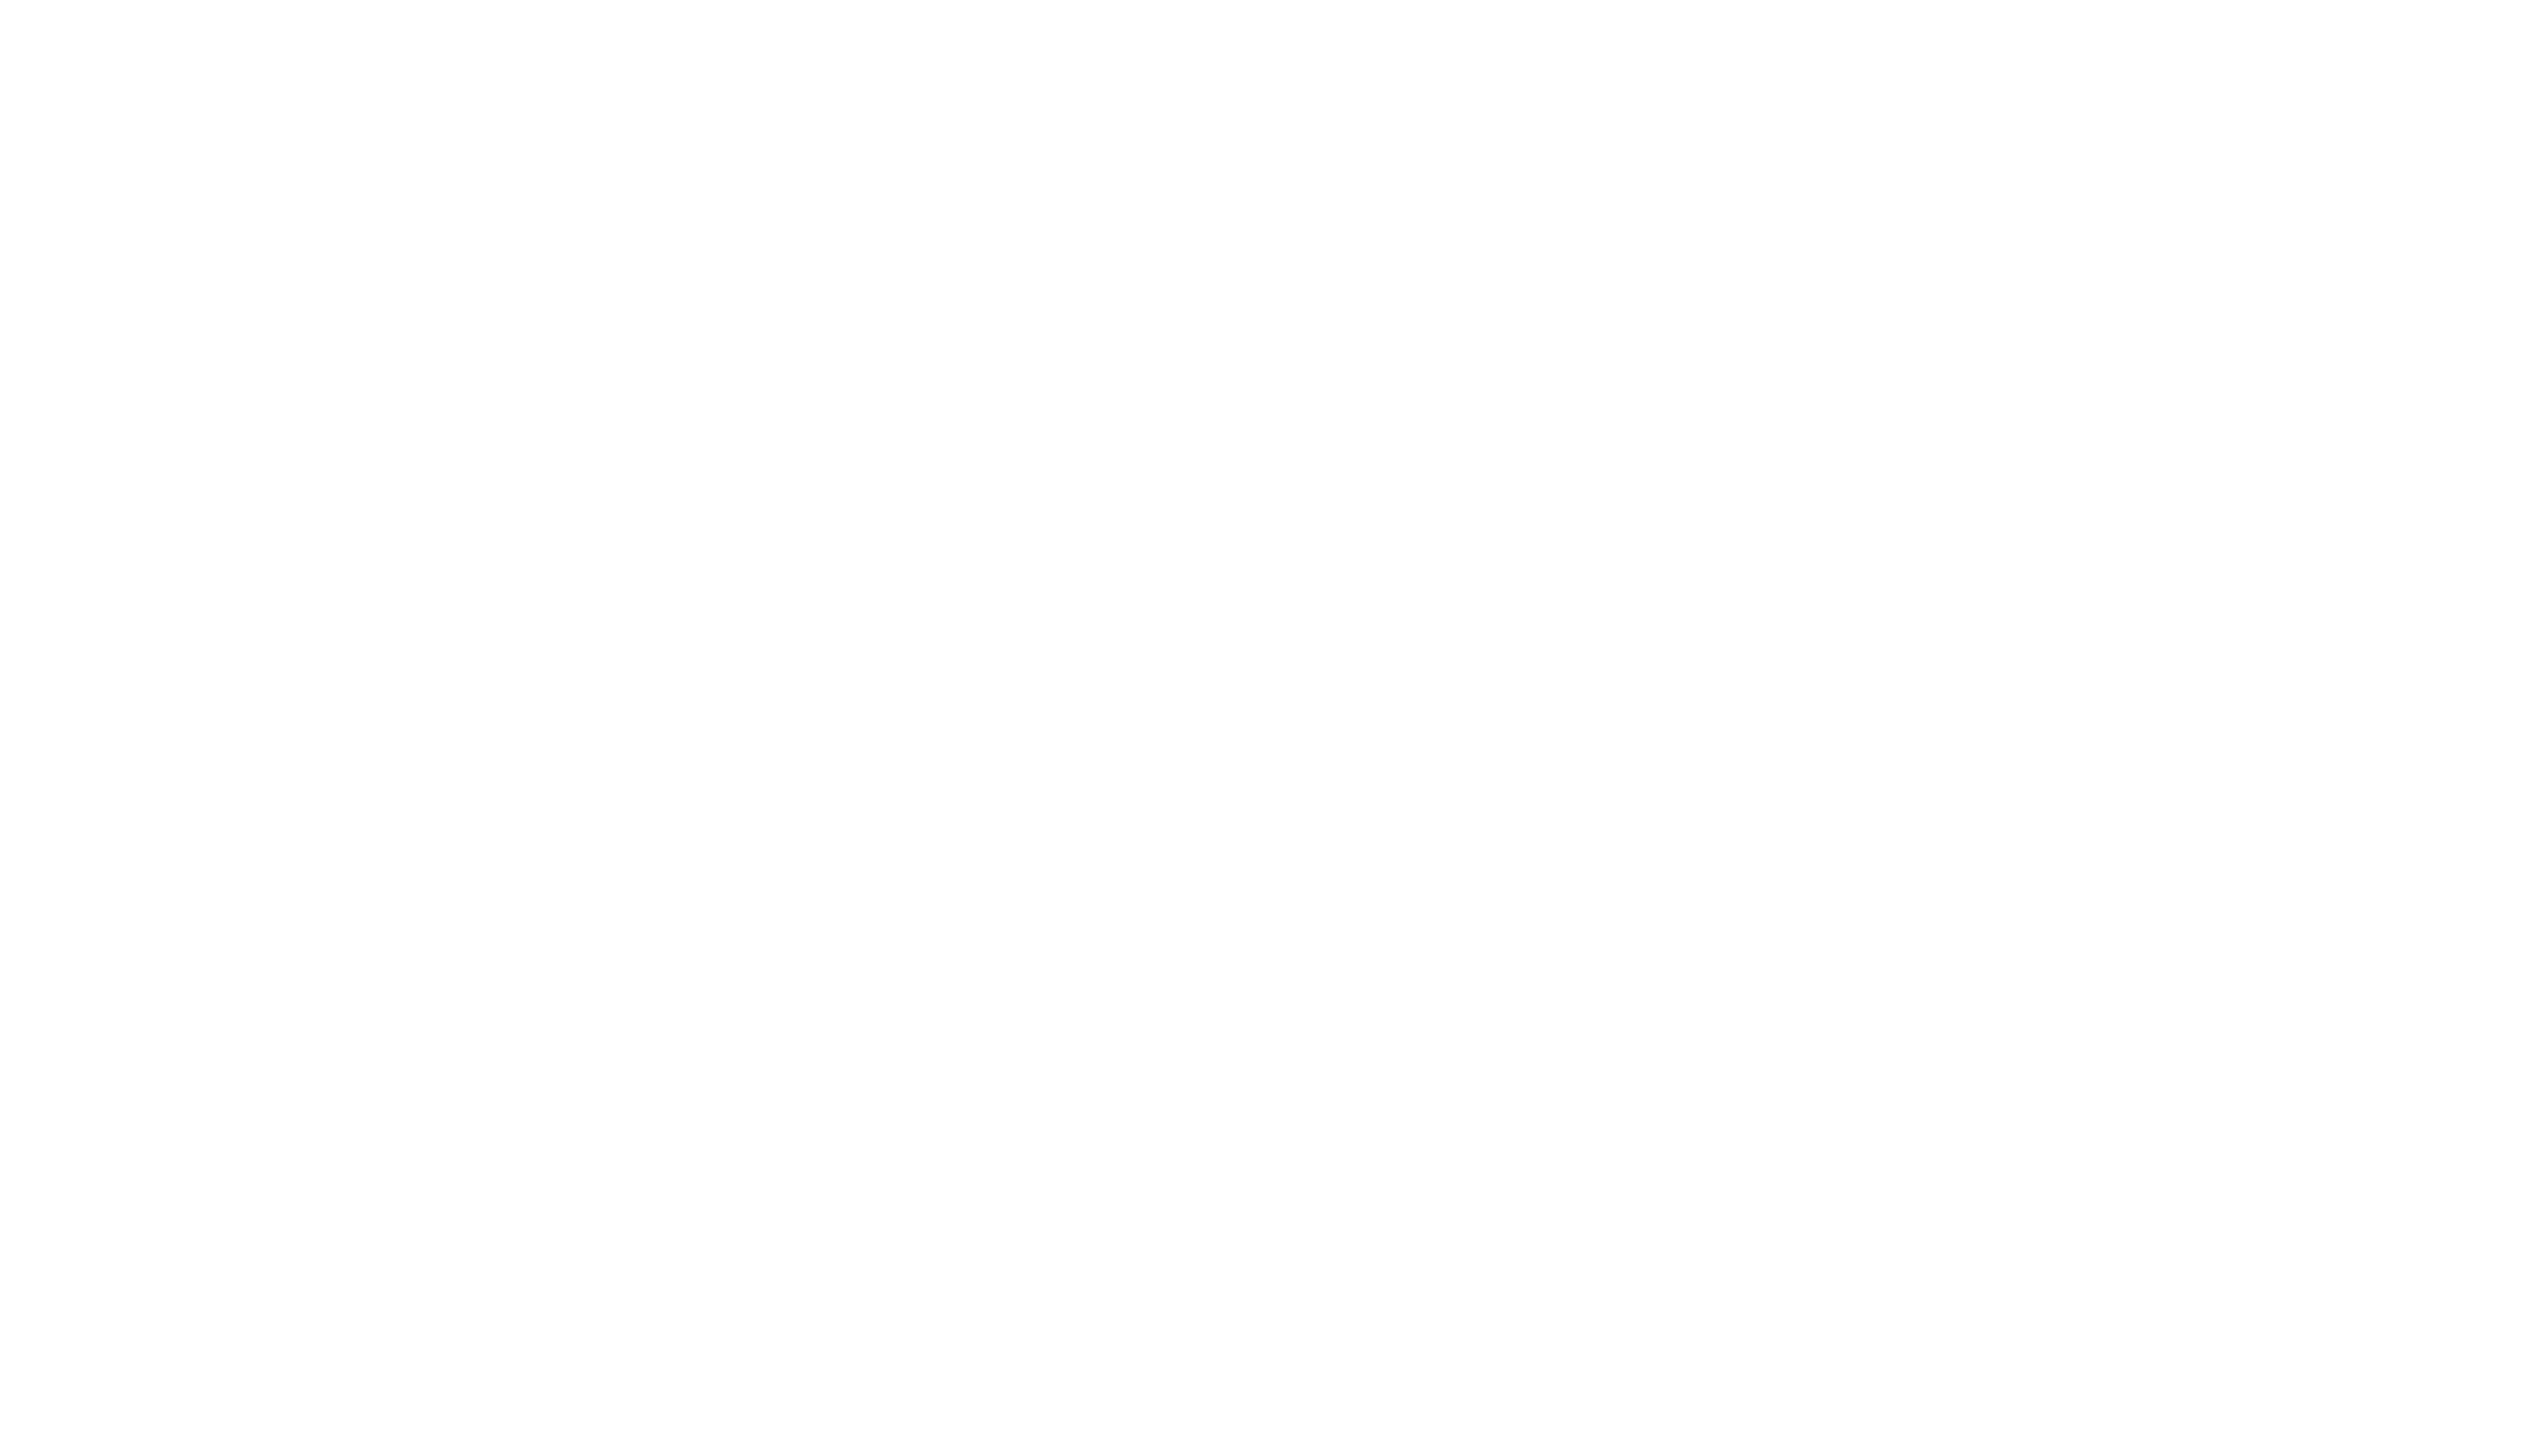 smilebhutan